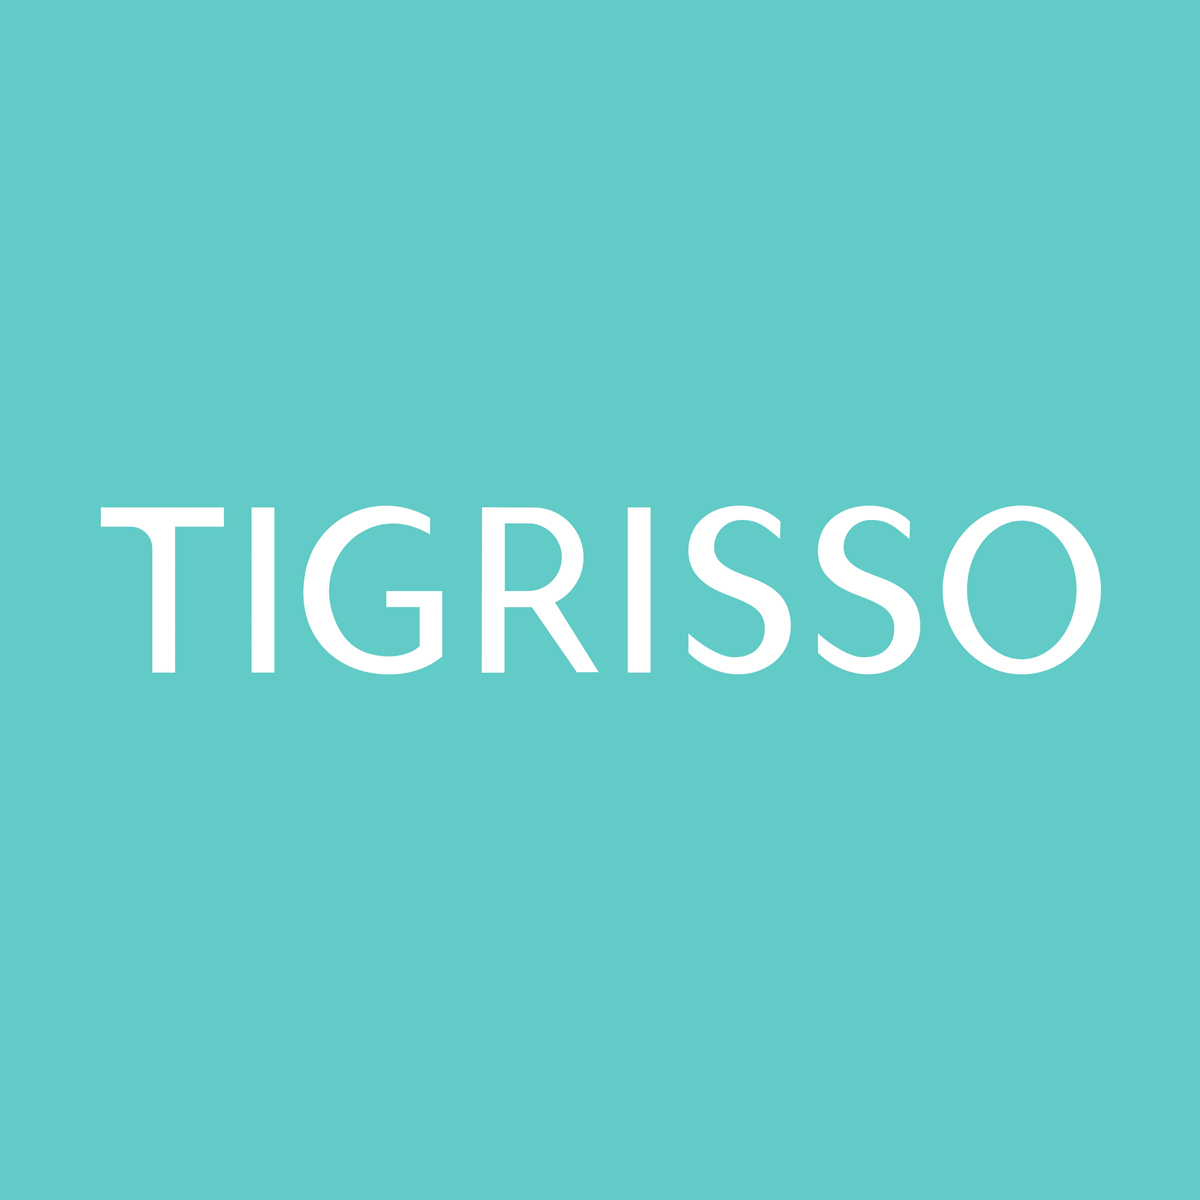 tigrisso旗舰店